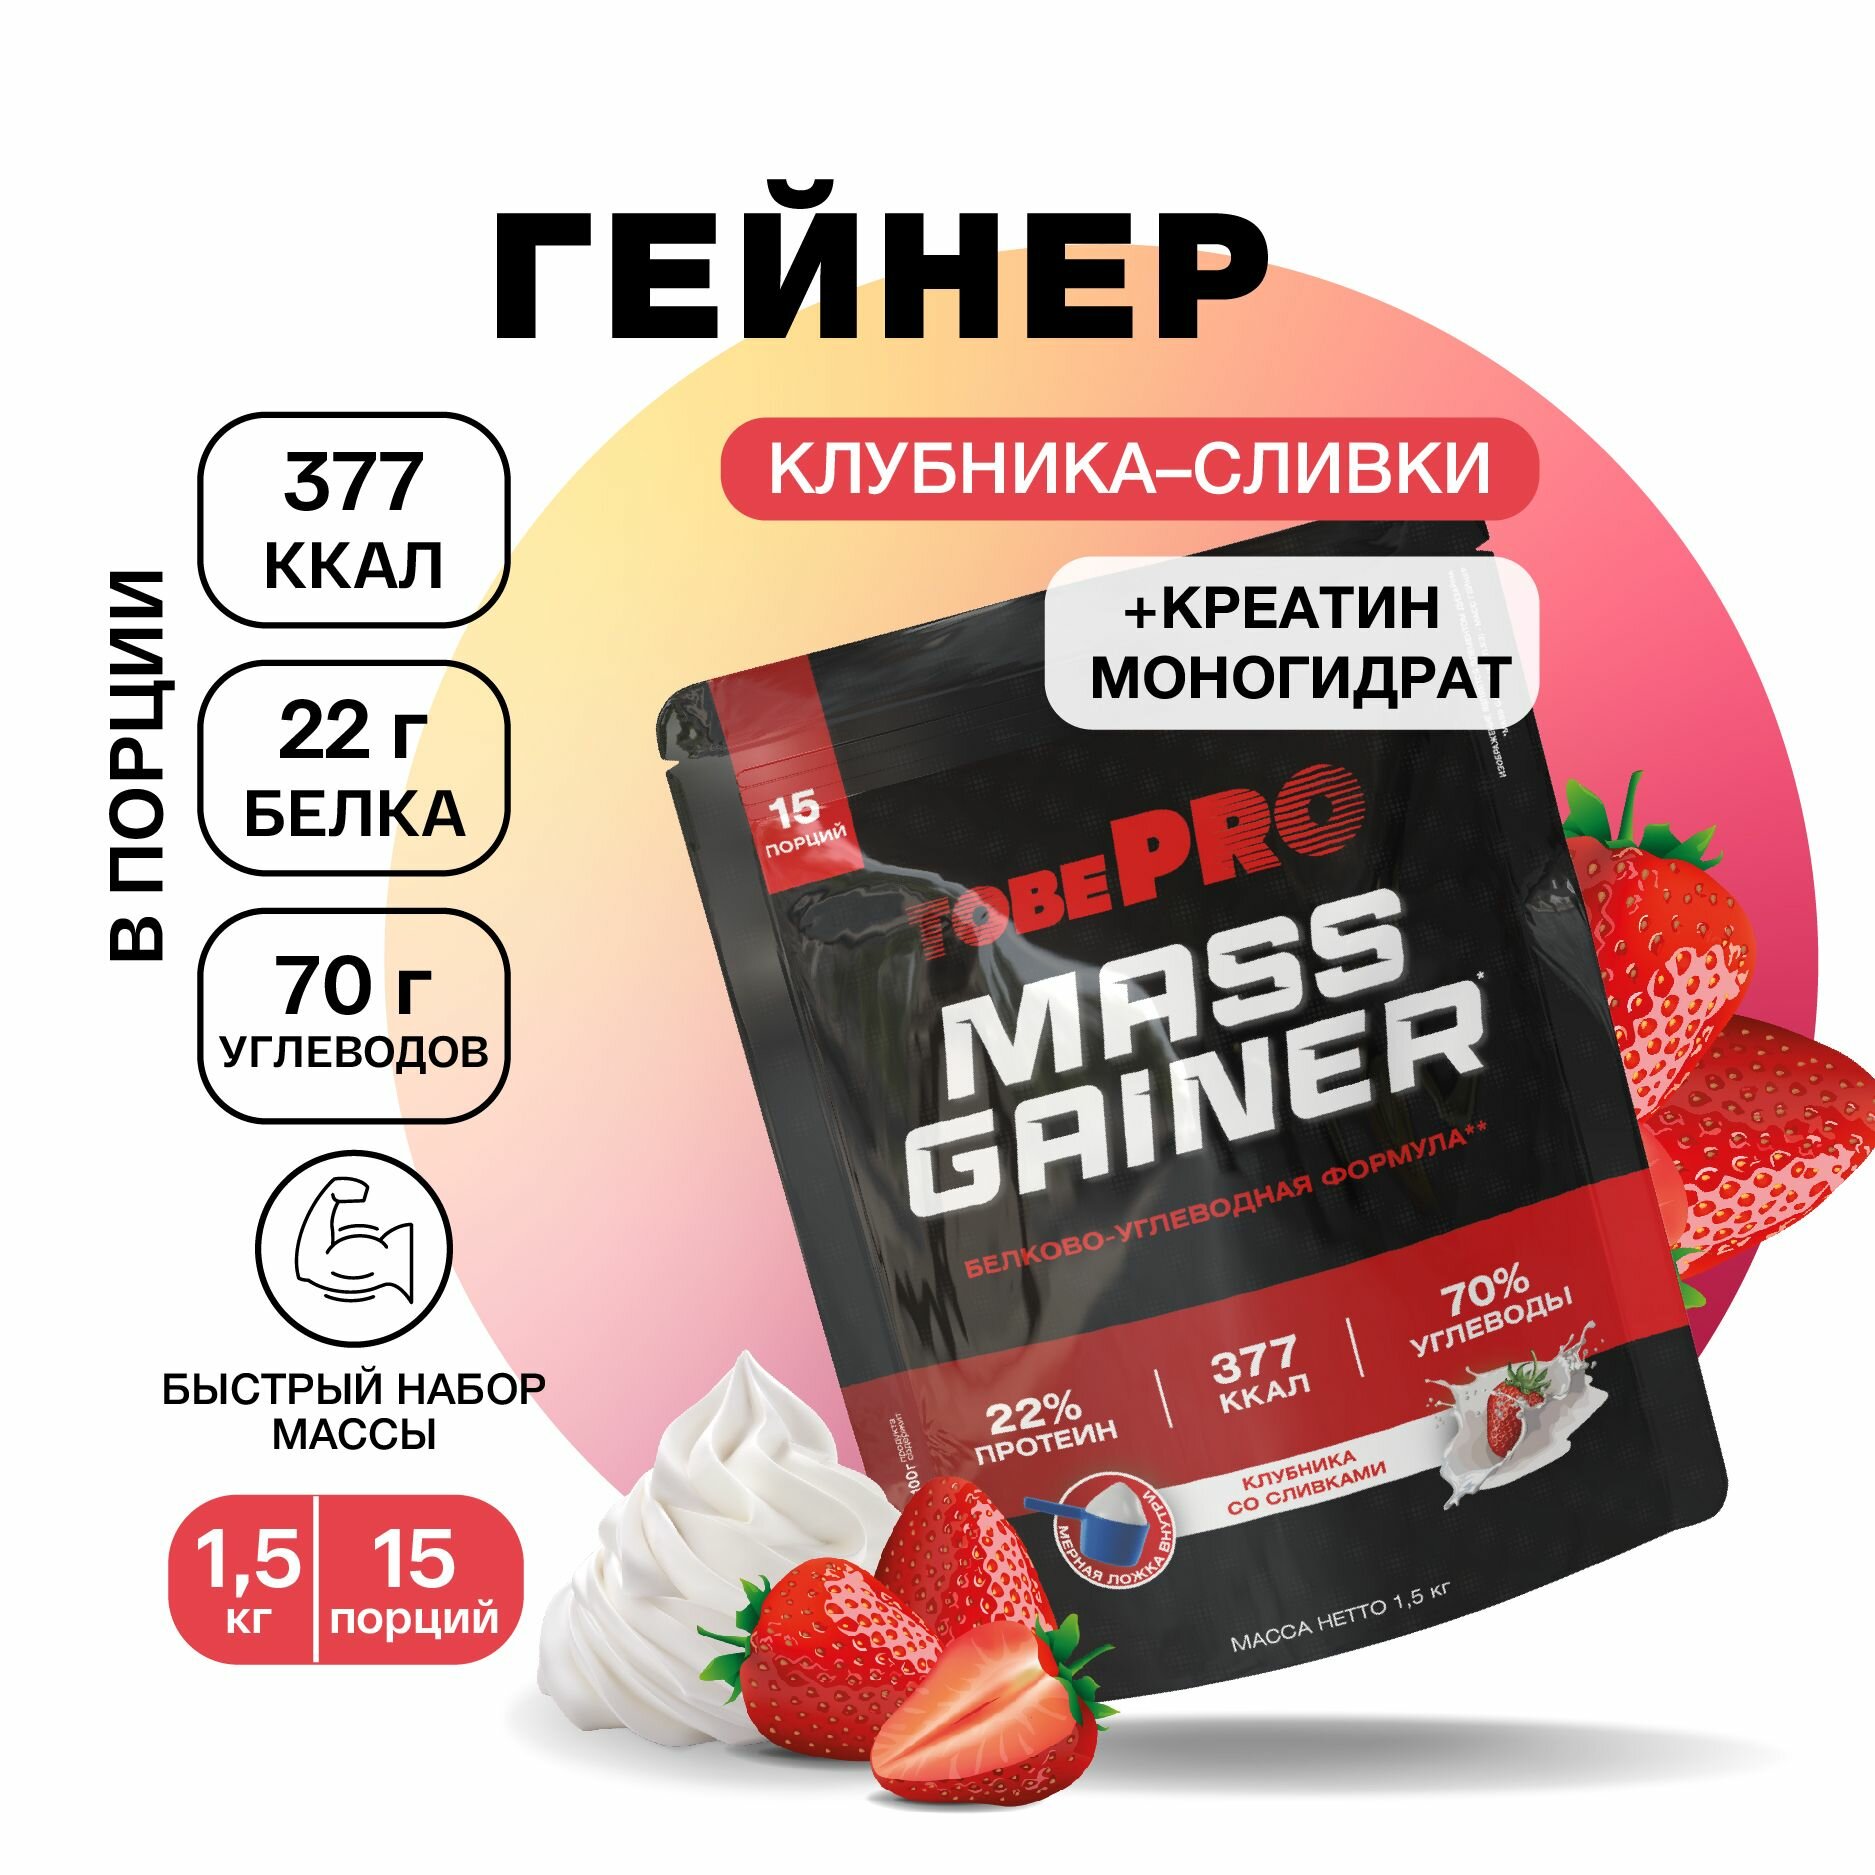 Гейнер протеин Ванильное мороженое MASS GAINER TobePRO для набора мышечной массы Иван-поле высокобелковый 3 кг